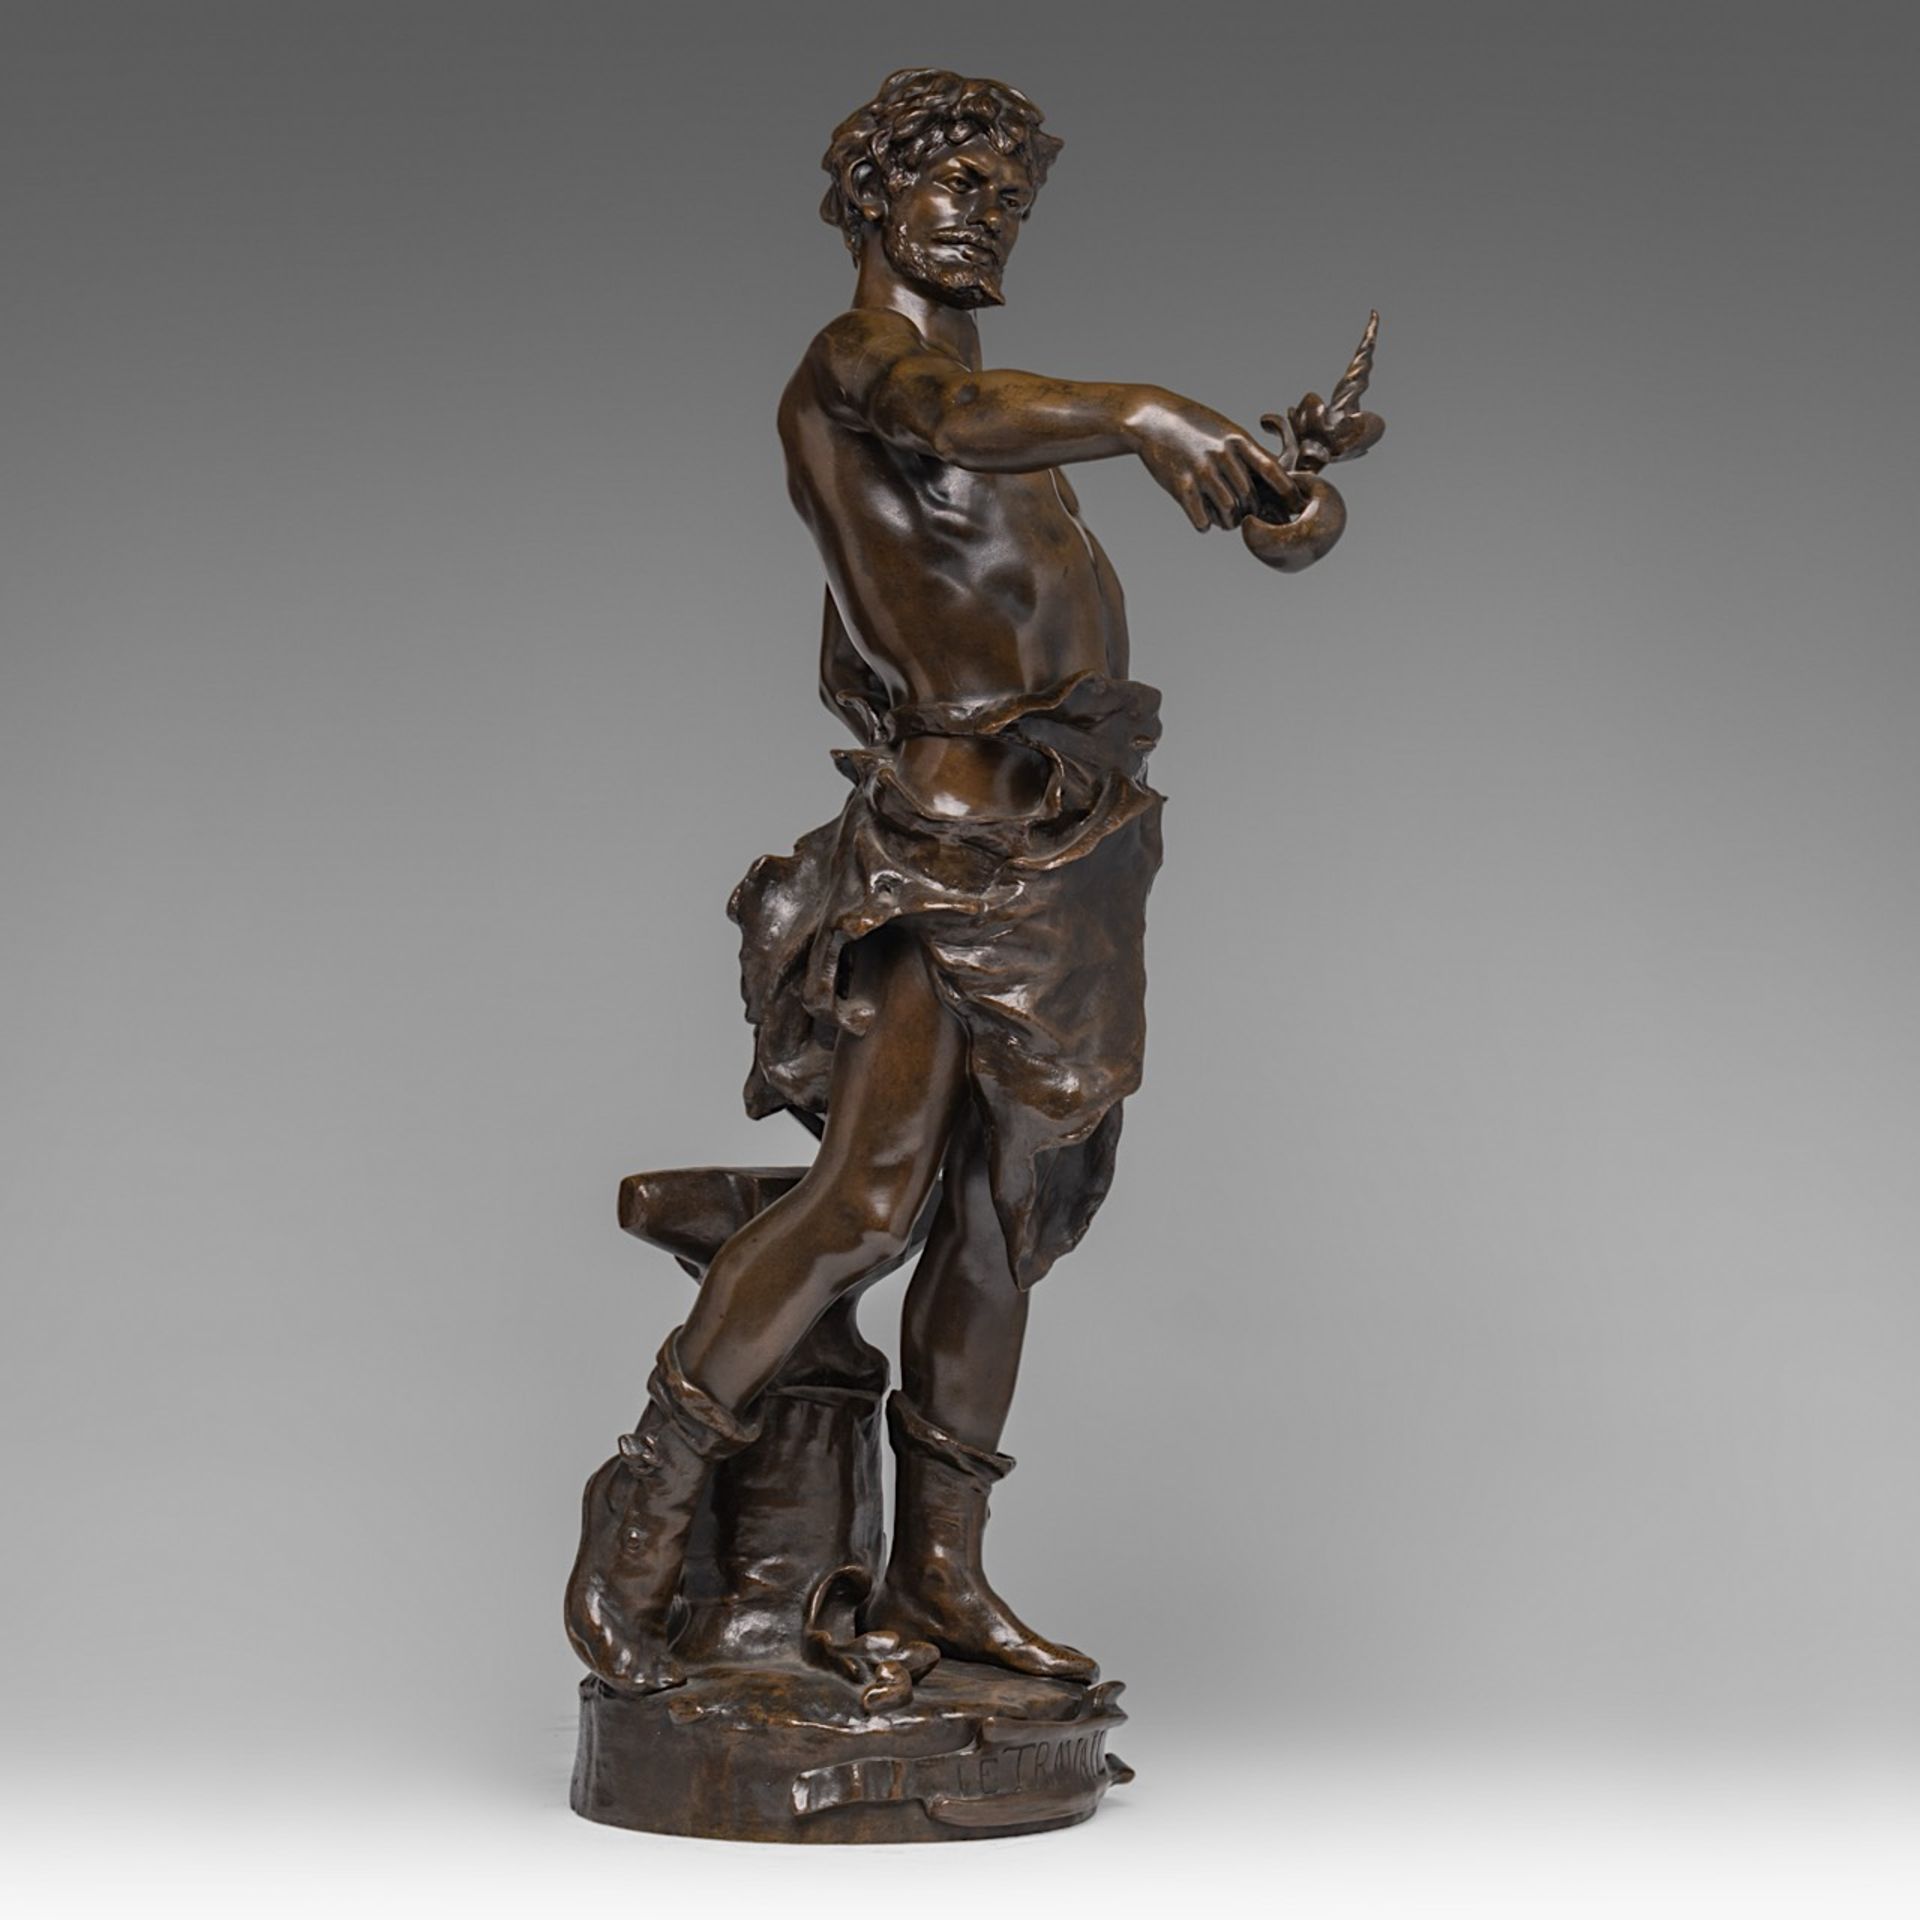 Claudius Mariton (1844-1919), 'Le Travail', patinated bronze, H 65 cm - Image 5 of 6